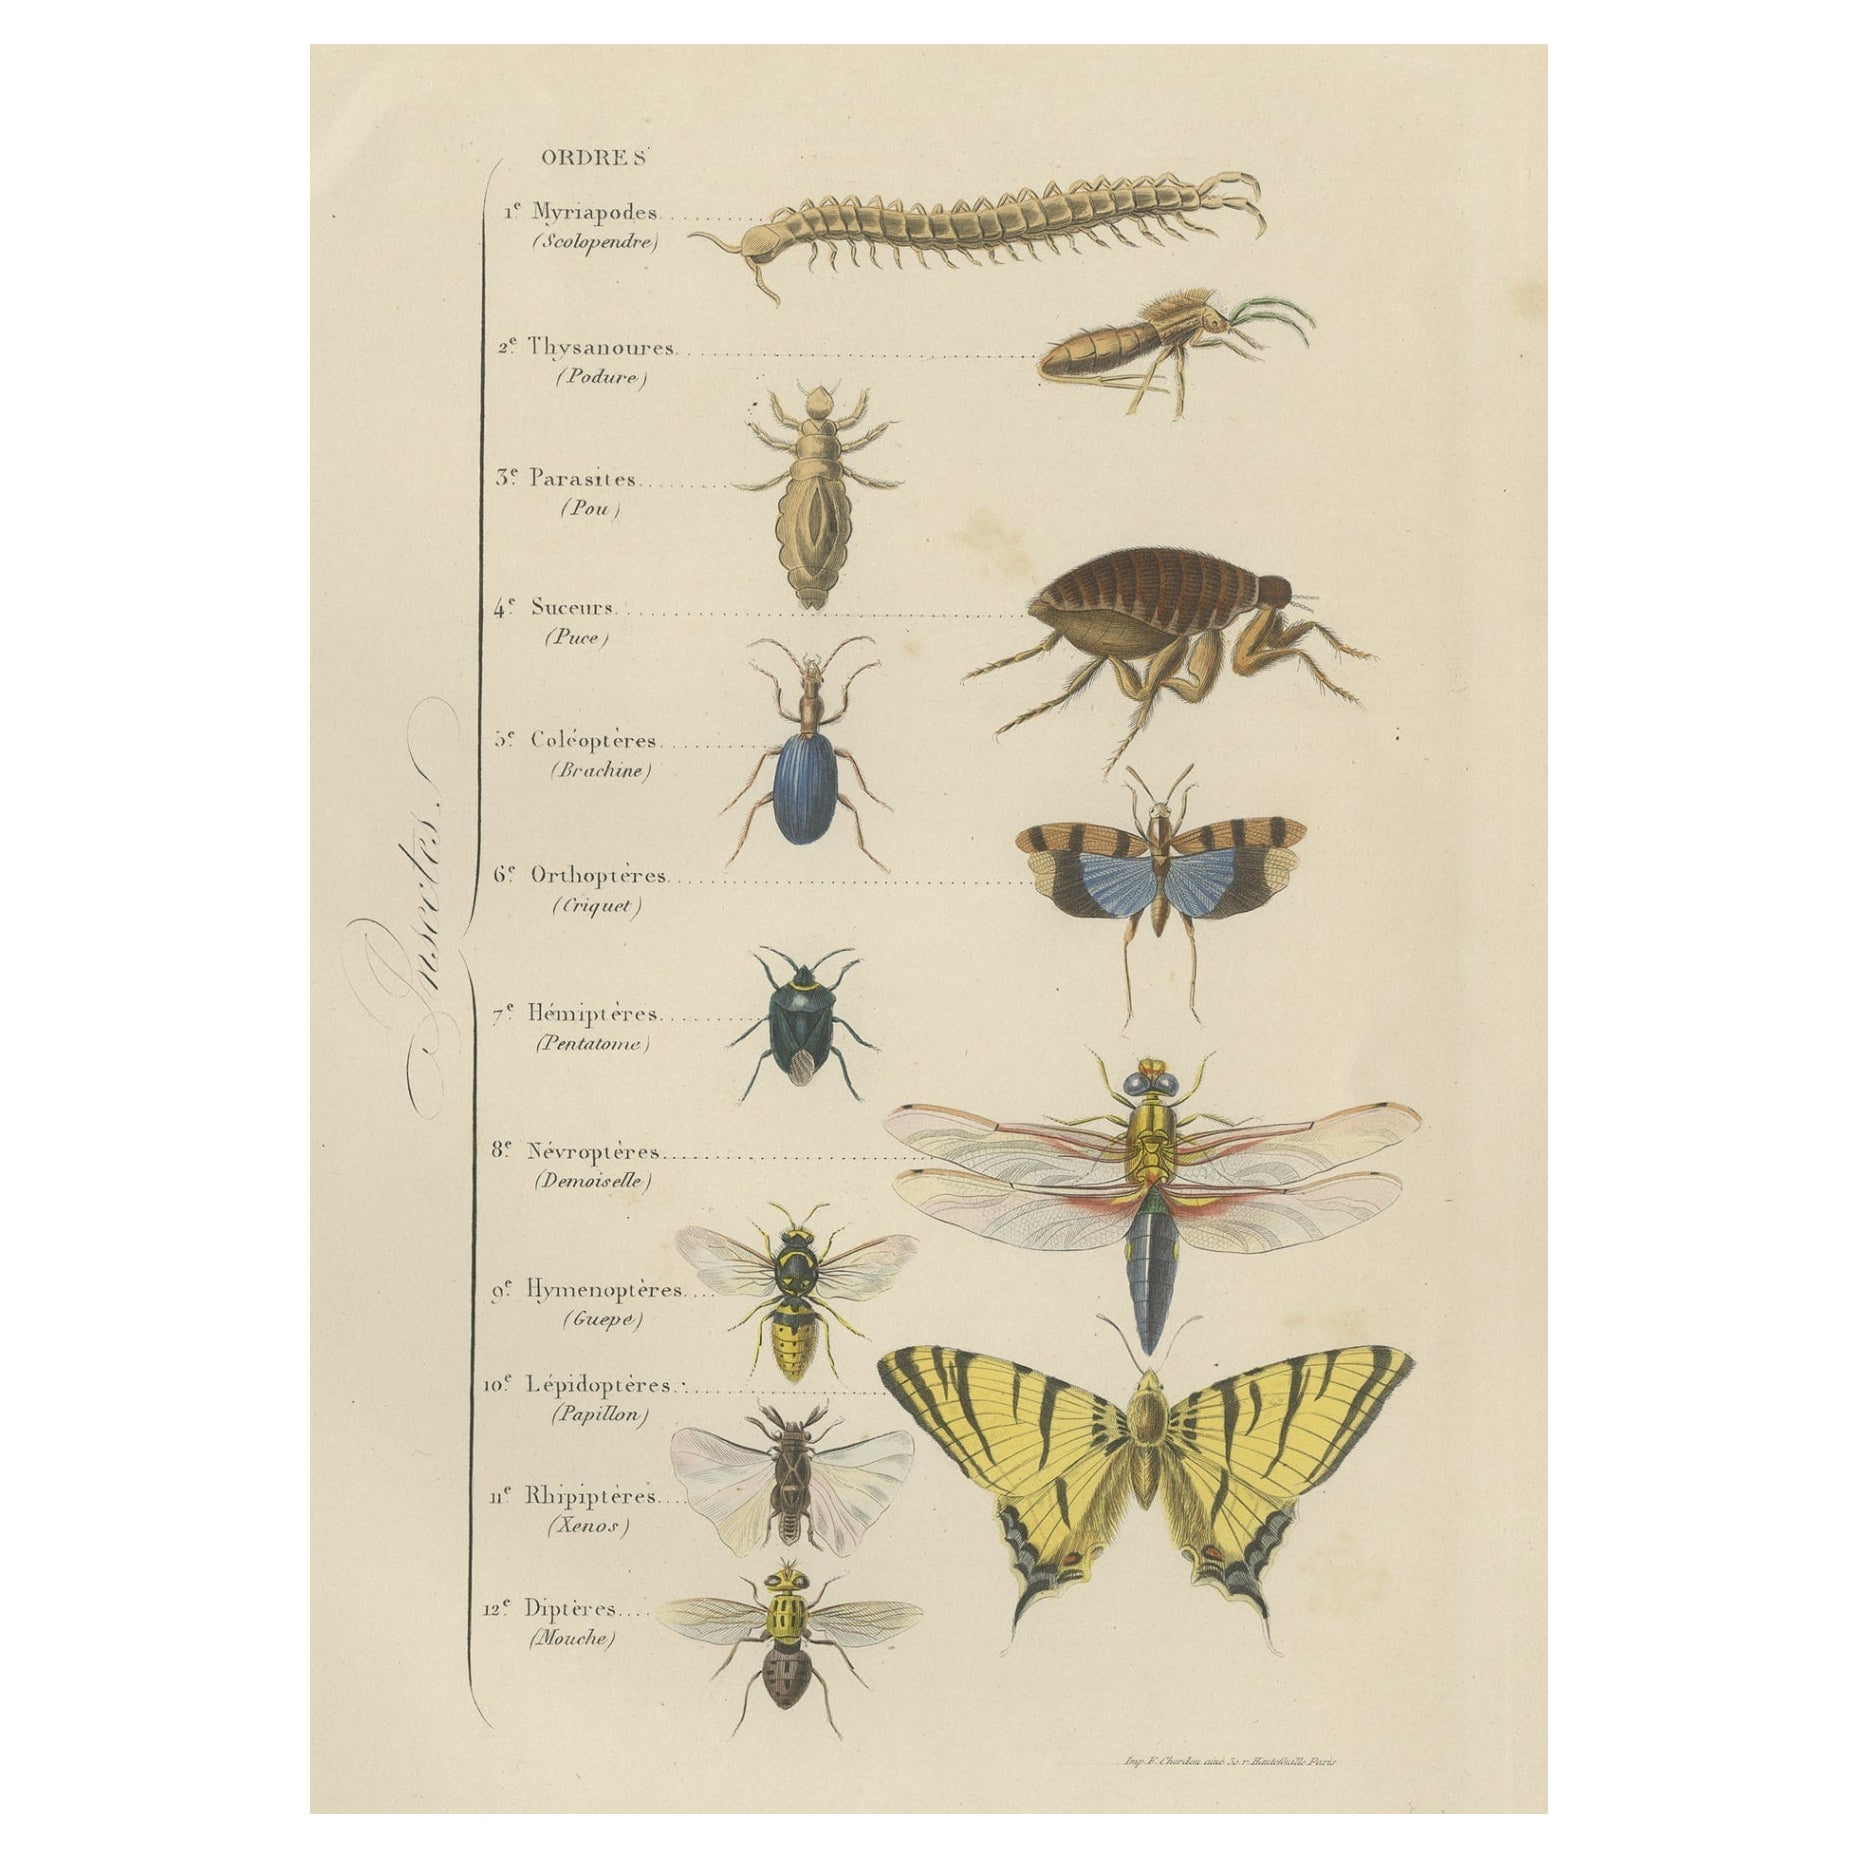 Impression ancienne de diverses insectes, publiée en 1854